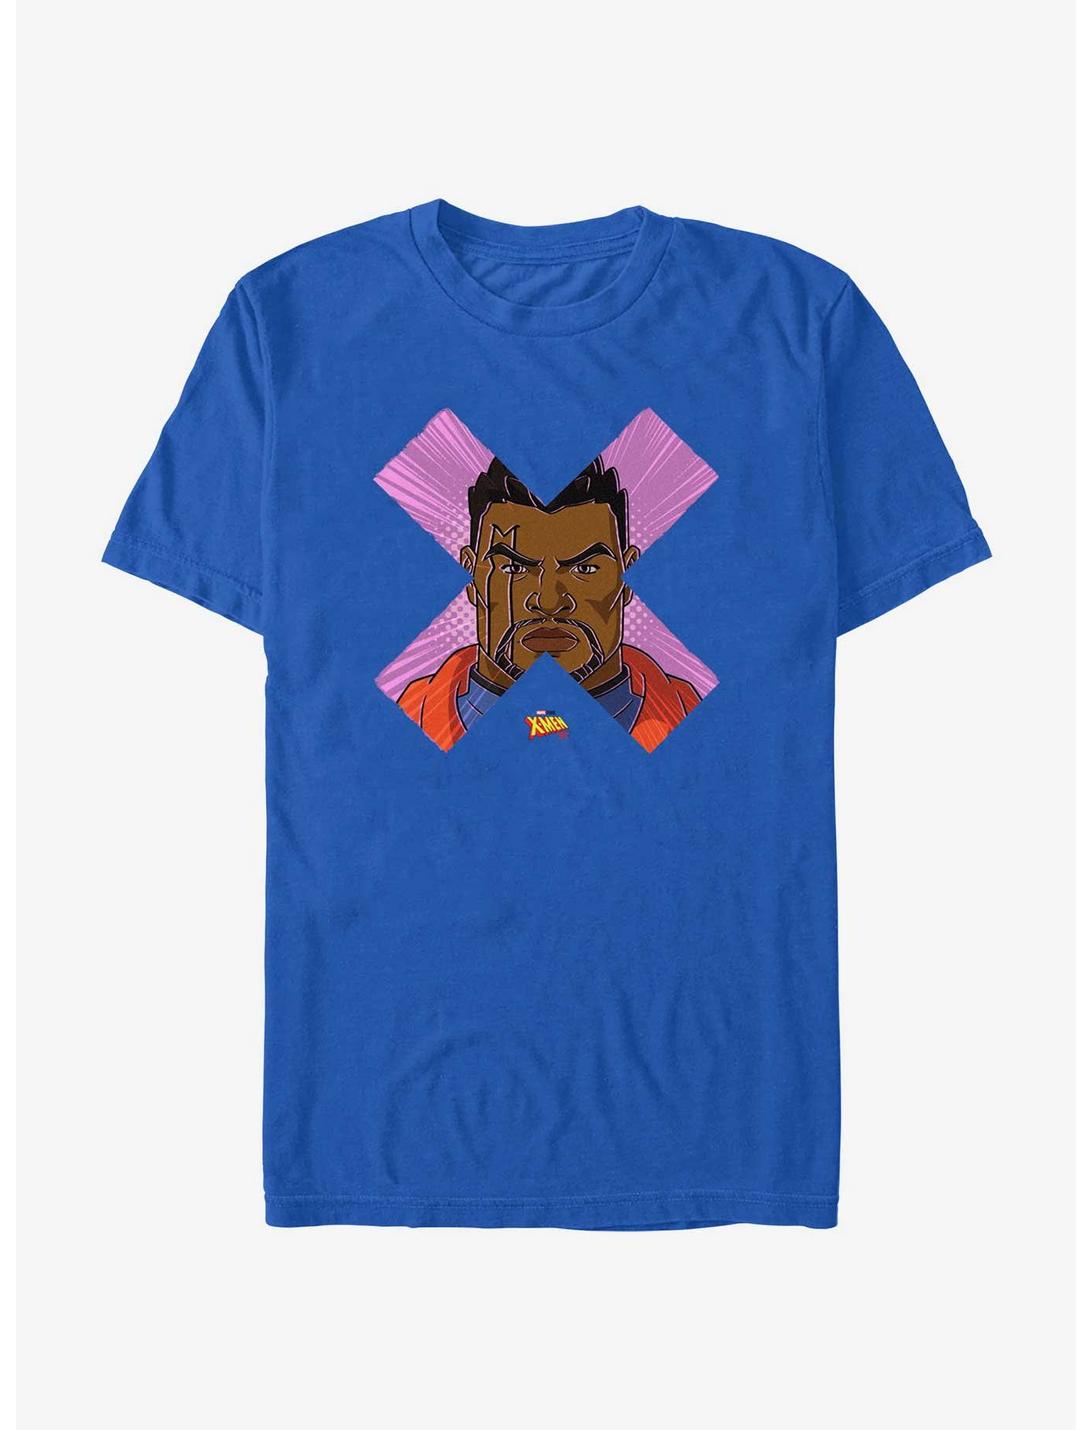 Marvel X-Men '97 Bishop Face T-Shirt, ROYAL, hi-res